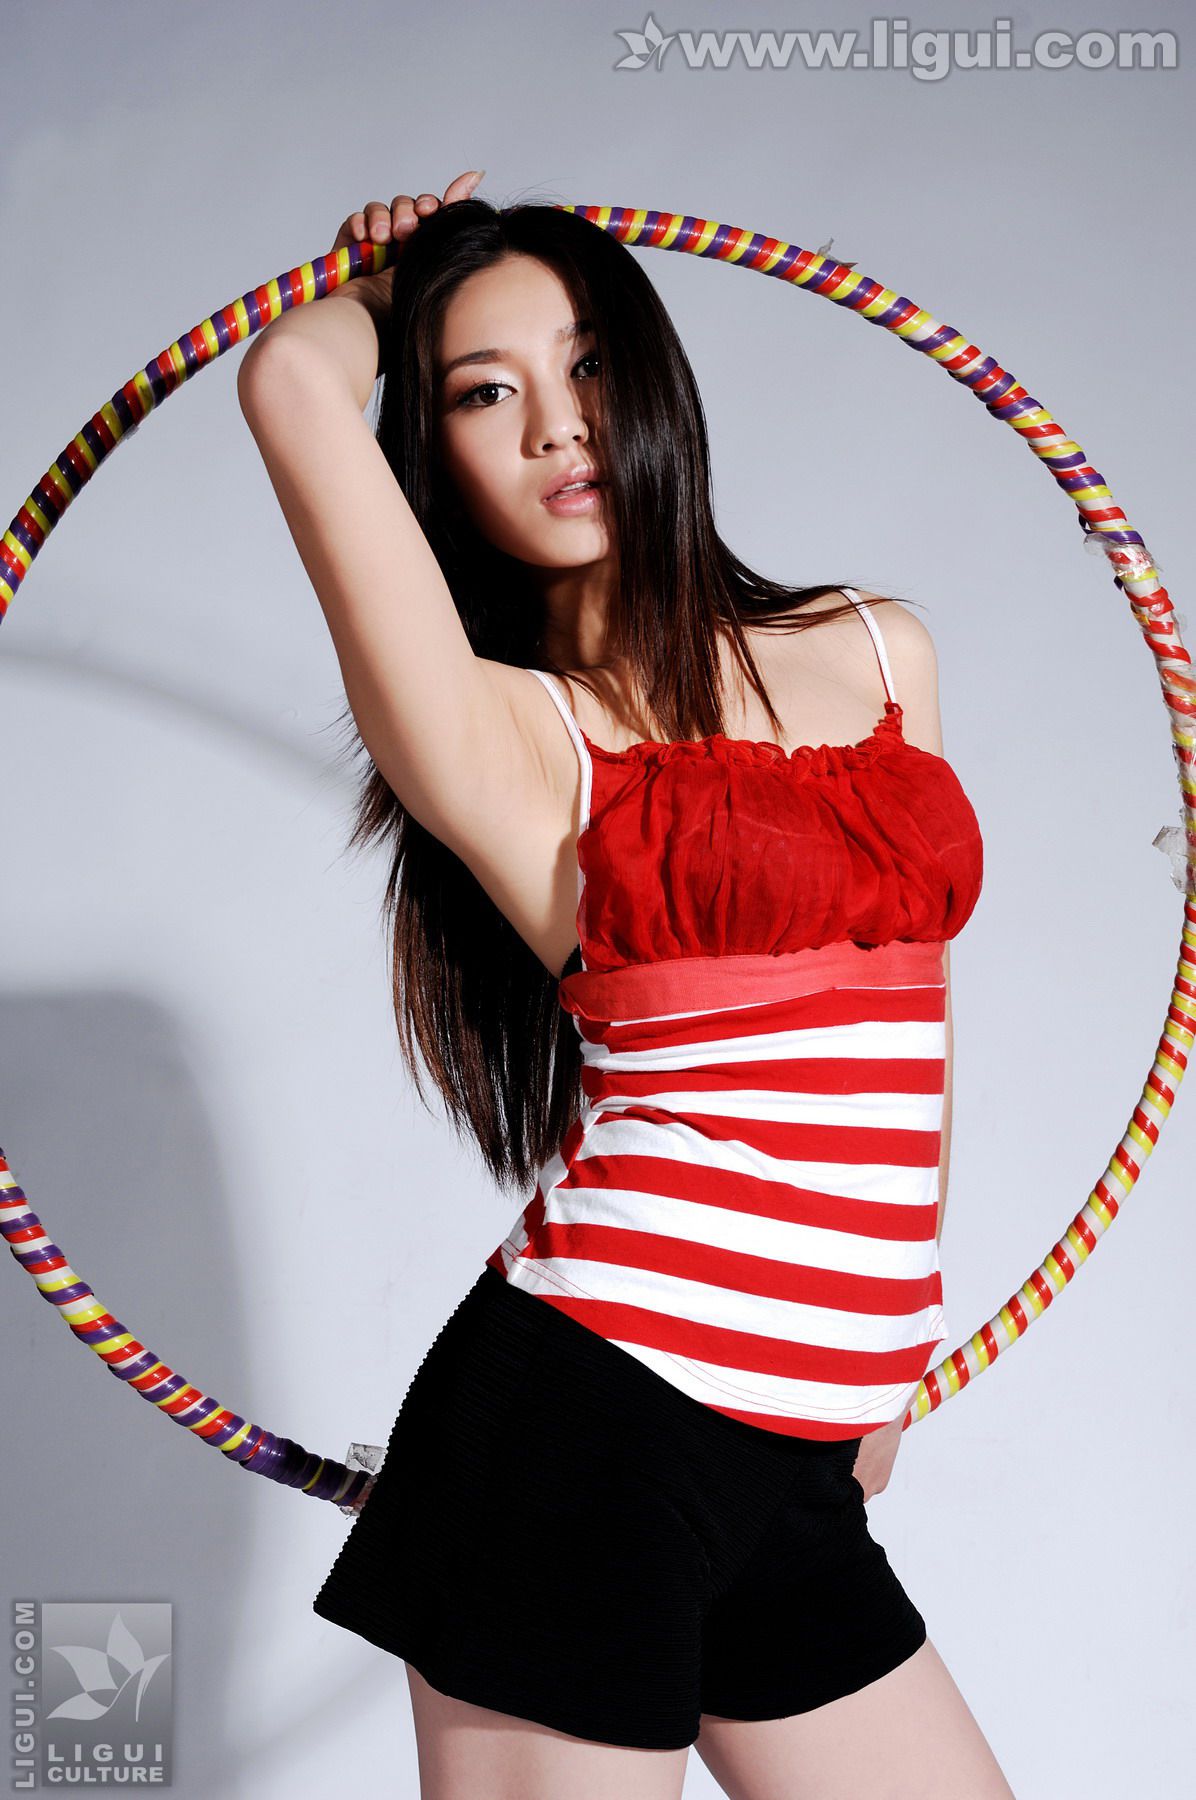 Model Tang Jing "Das glückliche Leben einer weiblichen Fitnesstrainerin" [丽 柜 LiGui] Foto von schönen Beinen und Jadefüßen Seite 34 No.e73131